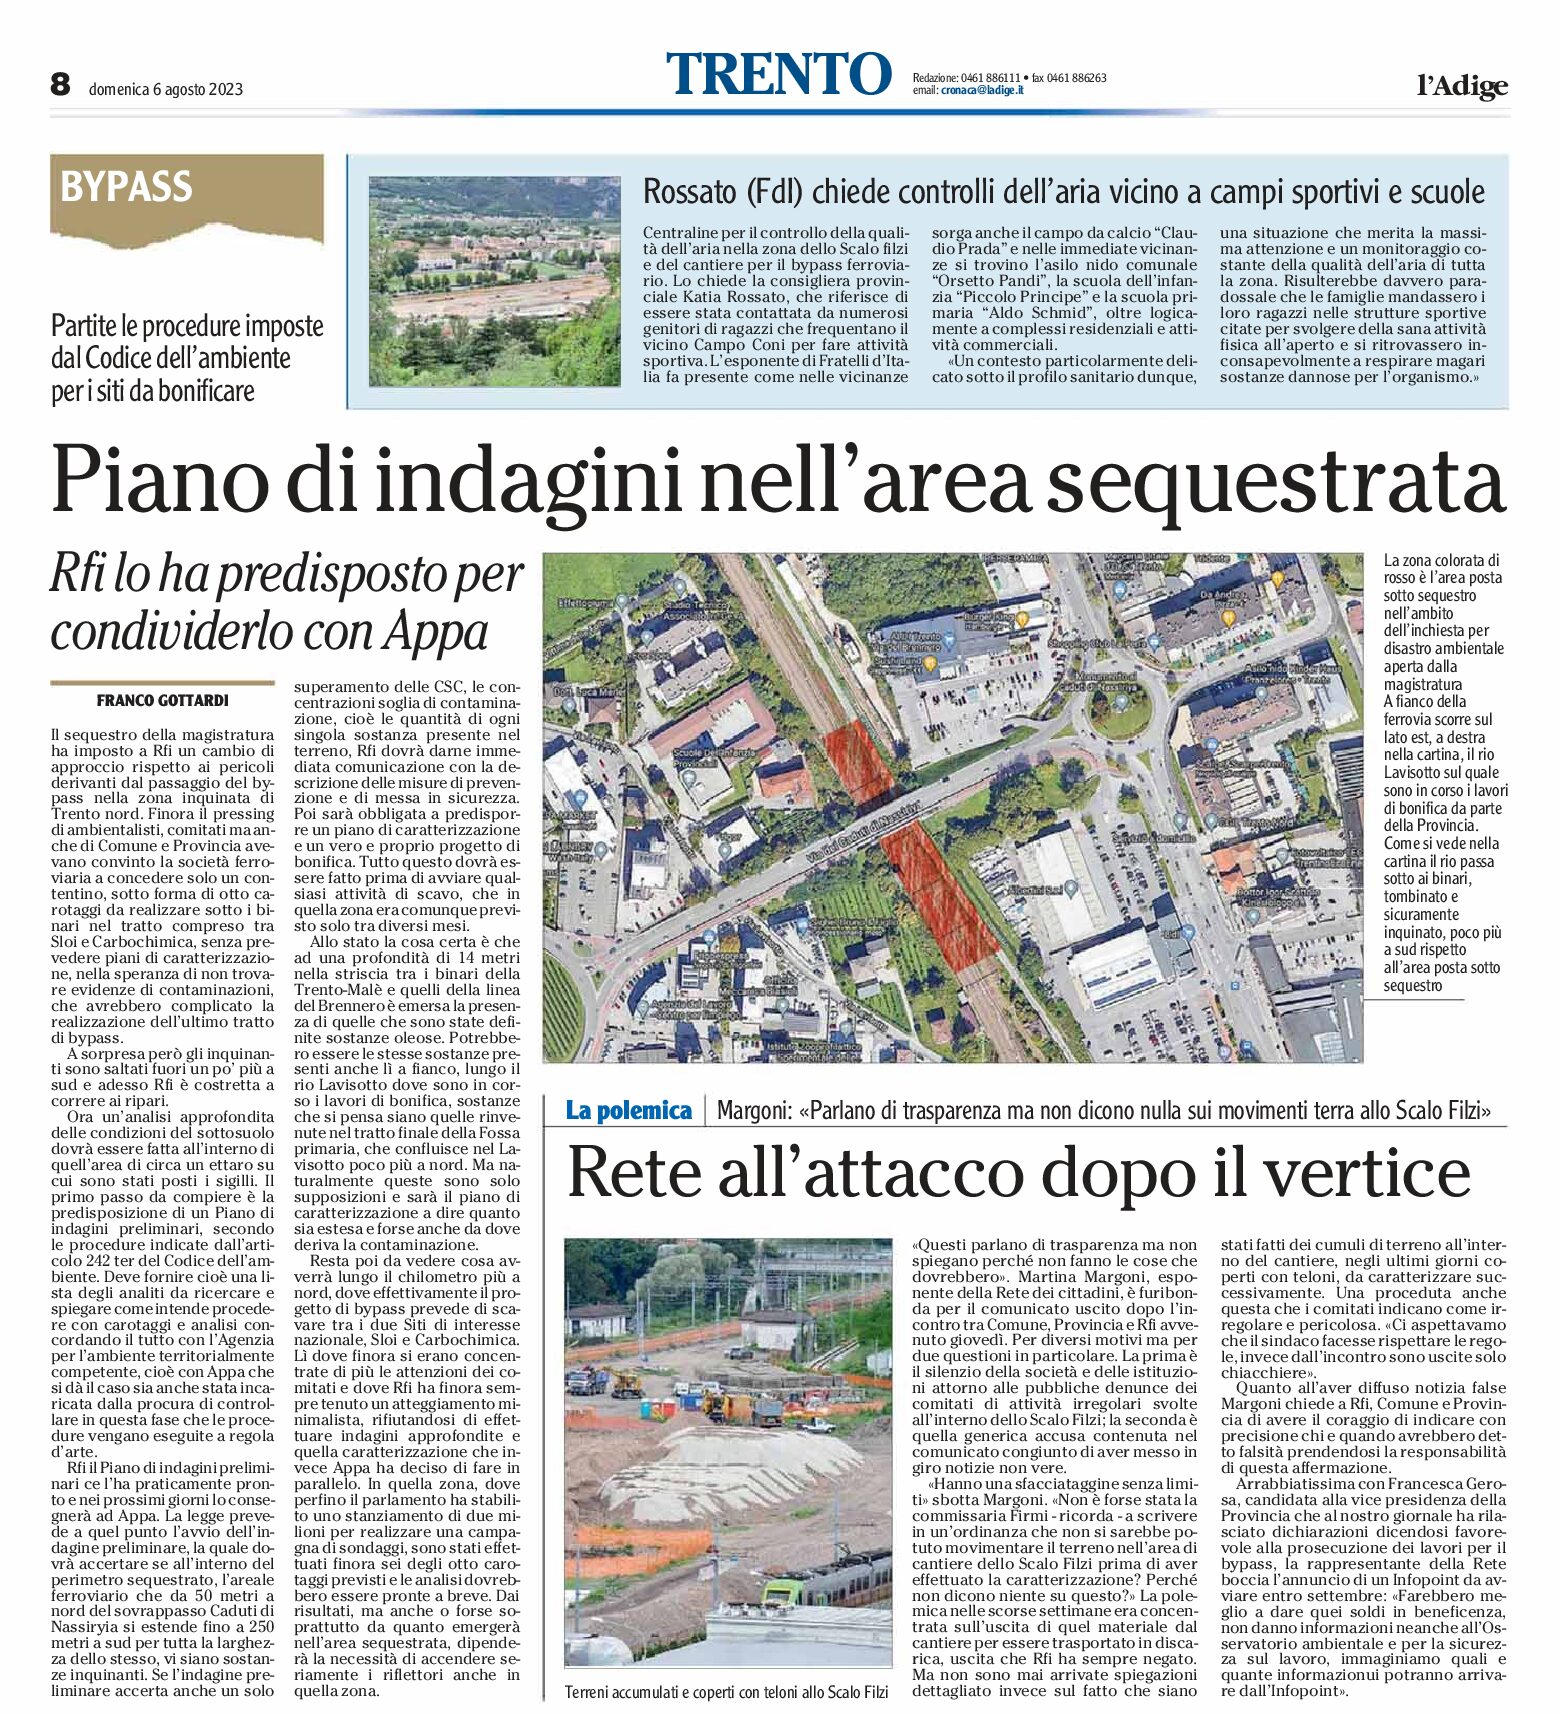 Trento: piano di indagini nell’area sequestrata